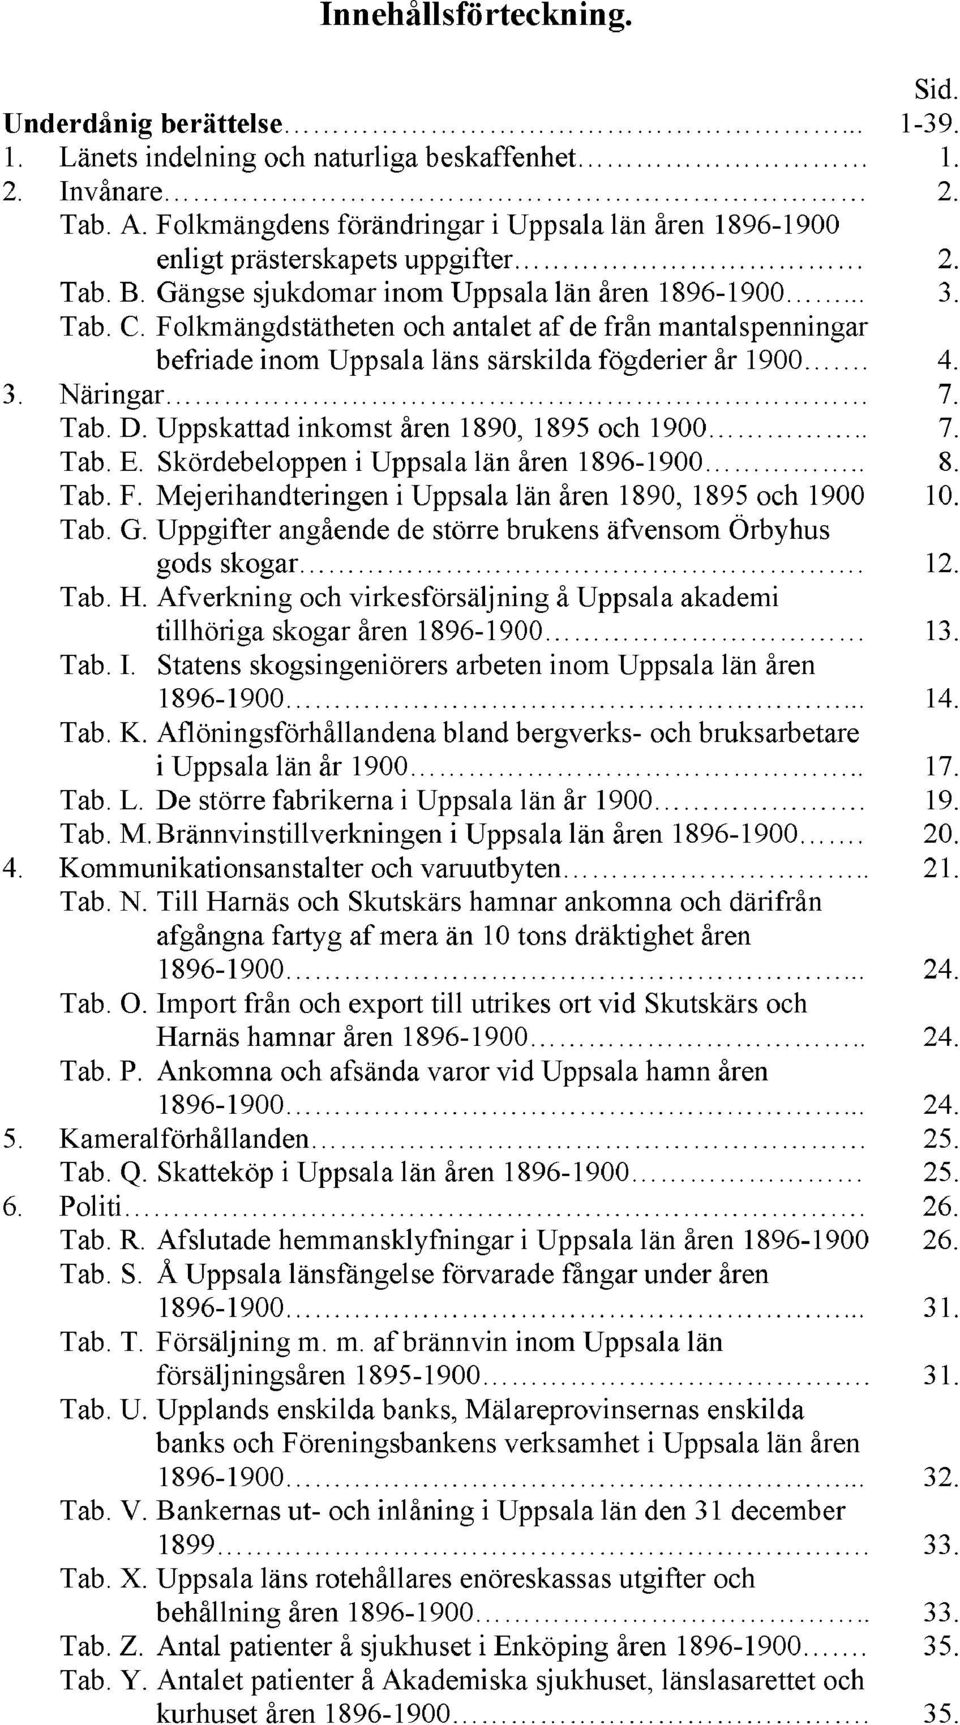 Folkmängdstätheten och antalet af de från mantalspenningar befriade inom Uppsala läns särskilda fögderier år 1900. 4. 3. Näringar 7. Tab. D. Uppskattad inkomst åren 1890, 1895 och 1900.. 7. Tab. E.